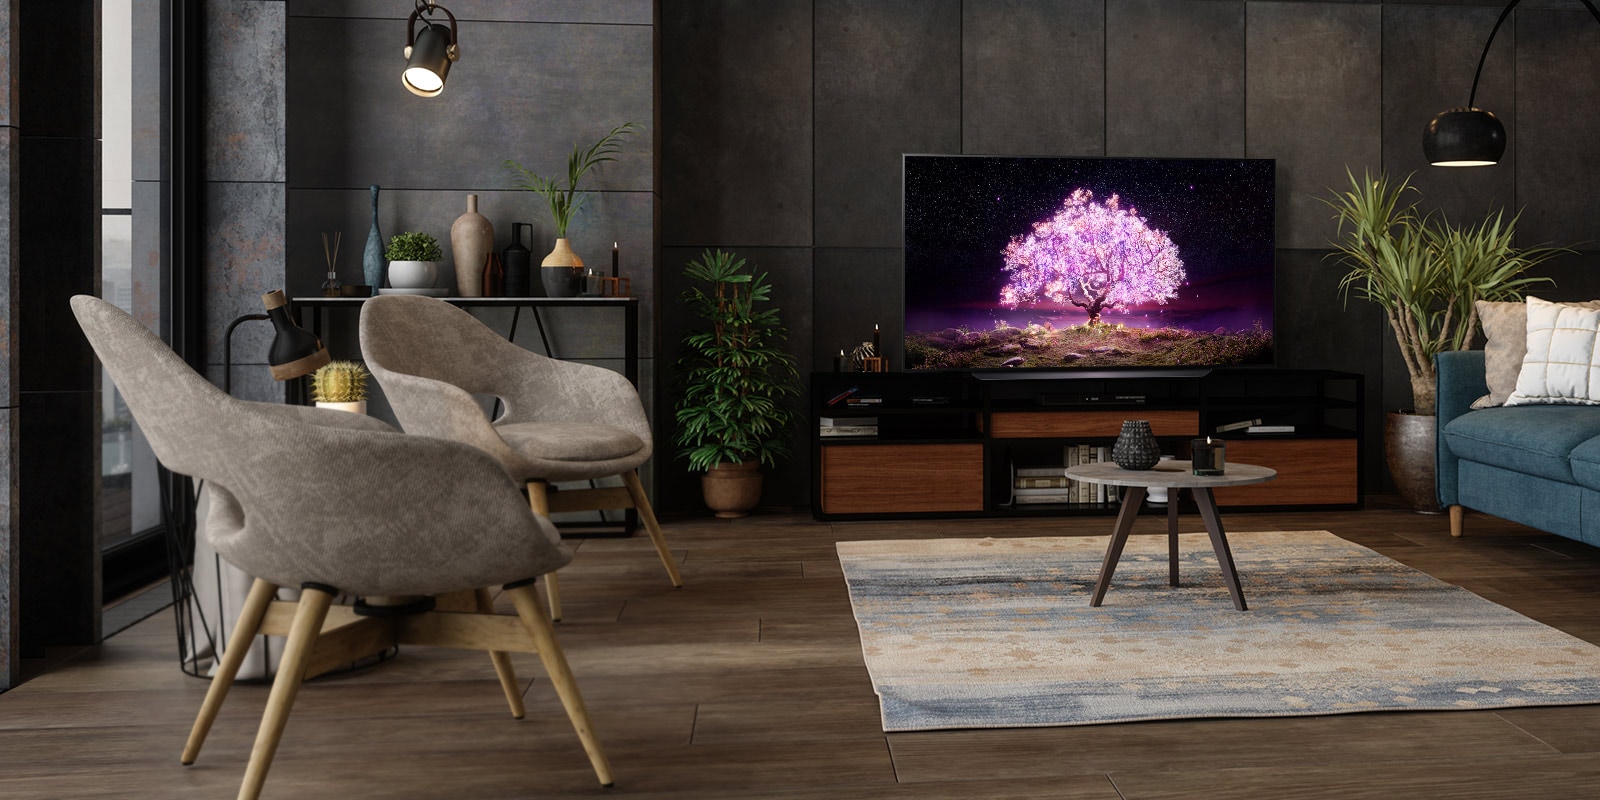 Телевизор в роскошной домашней обстановке демонстрирует дерево, излучающее фиолетовый свет.